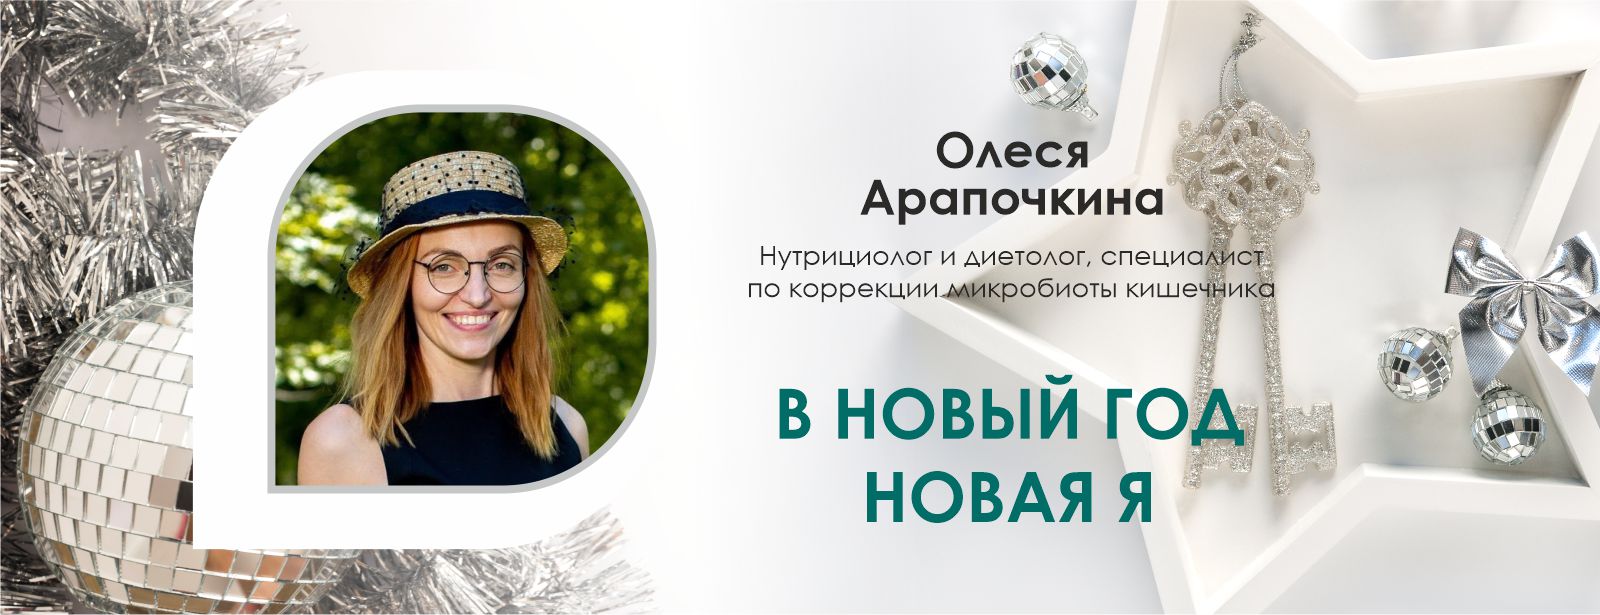 Вебинар компании Fucoidan World «В Новый год — новая Я», ведущая Олеся Арапочкина.